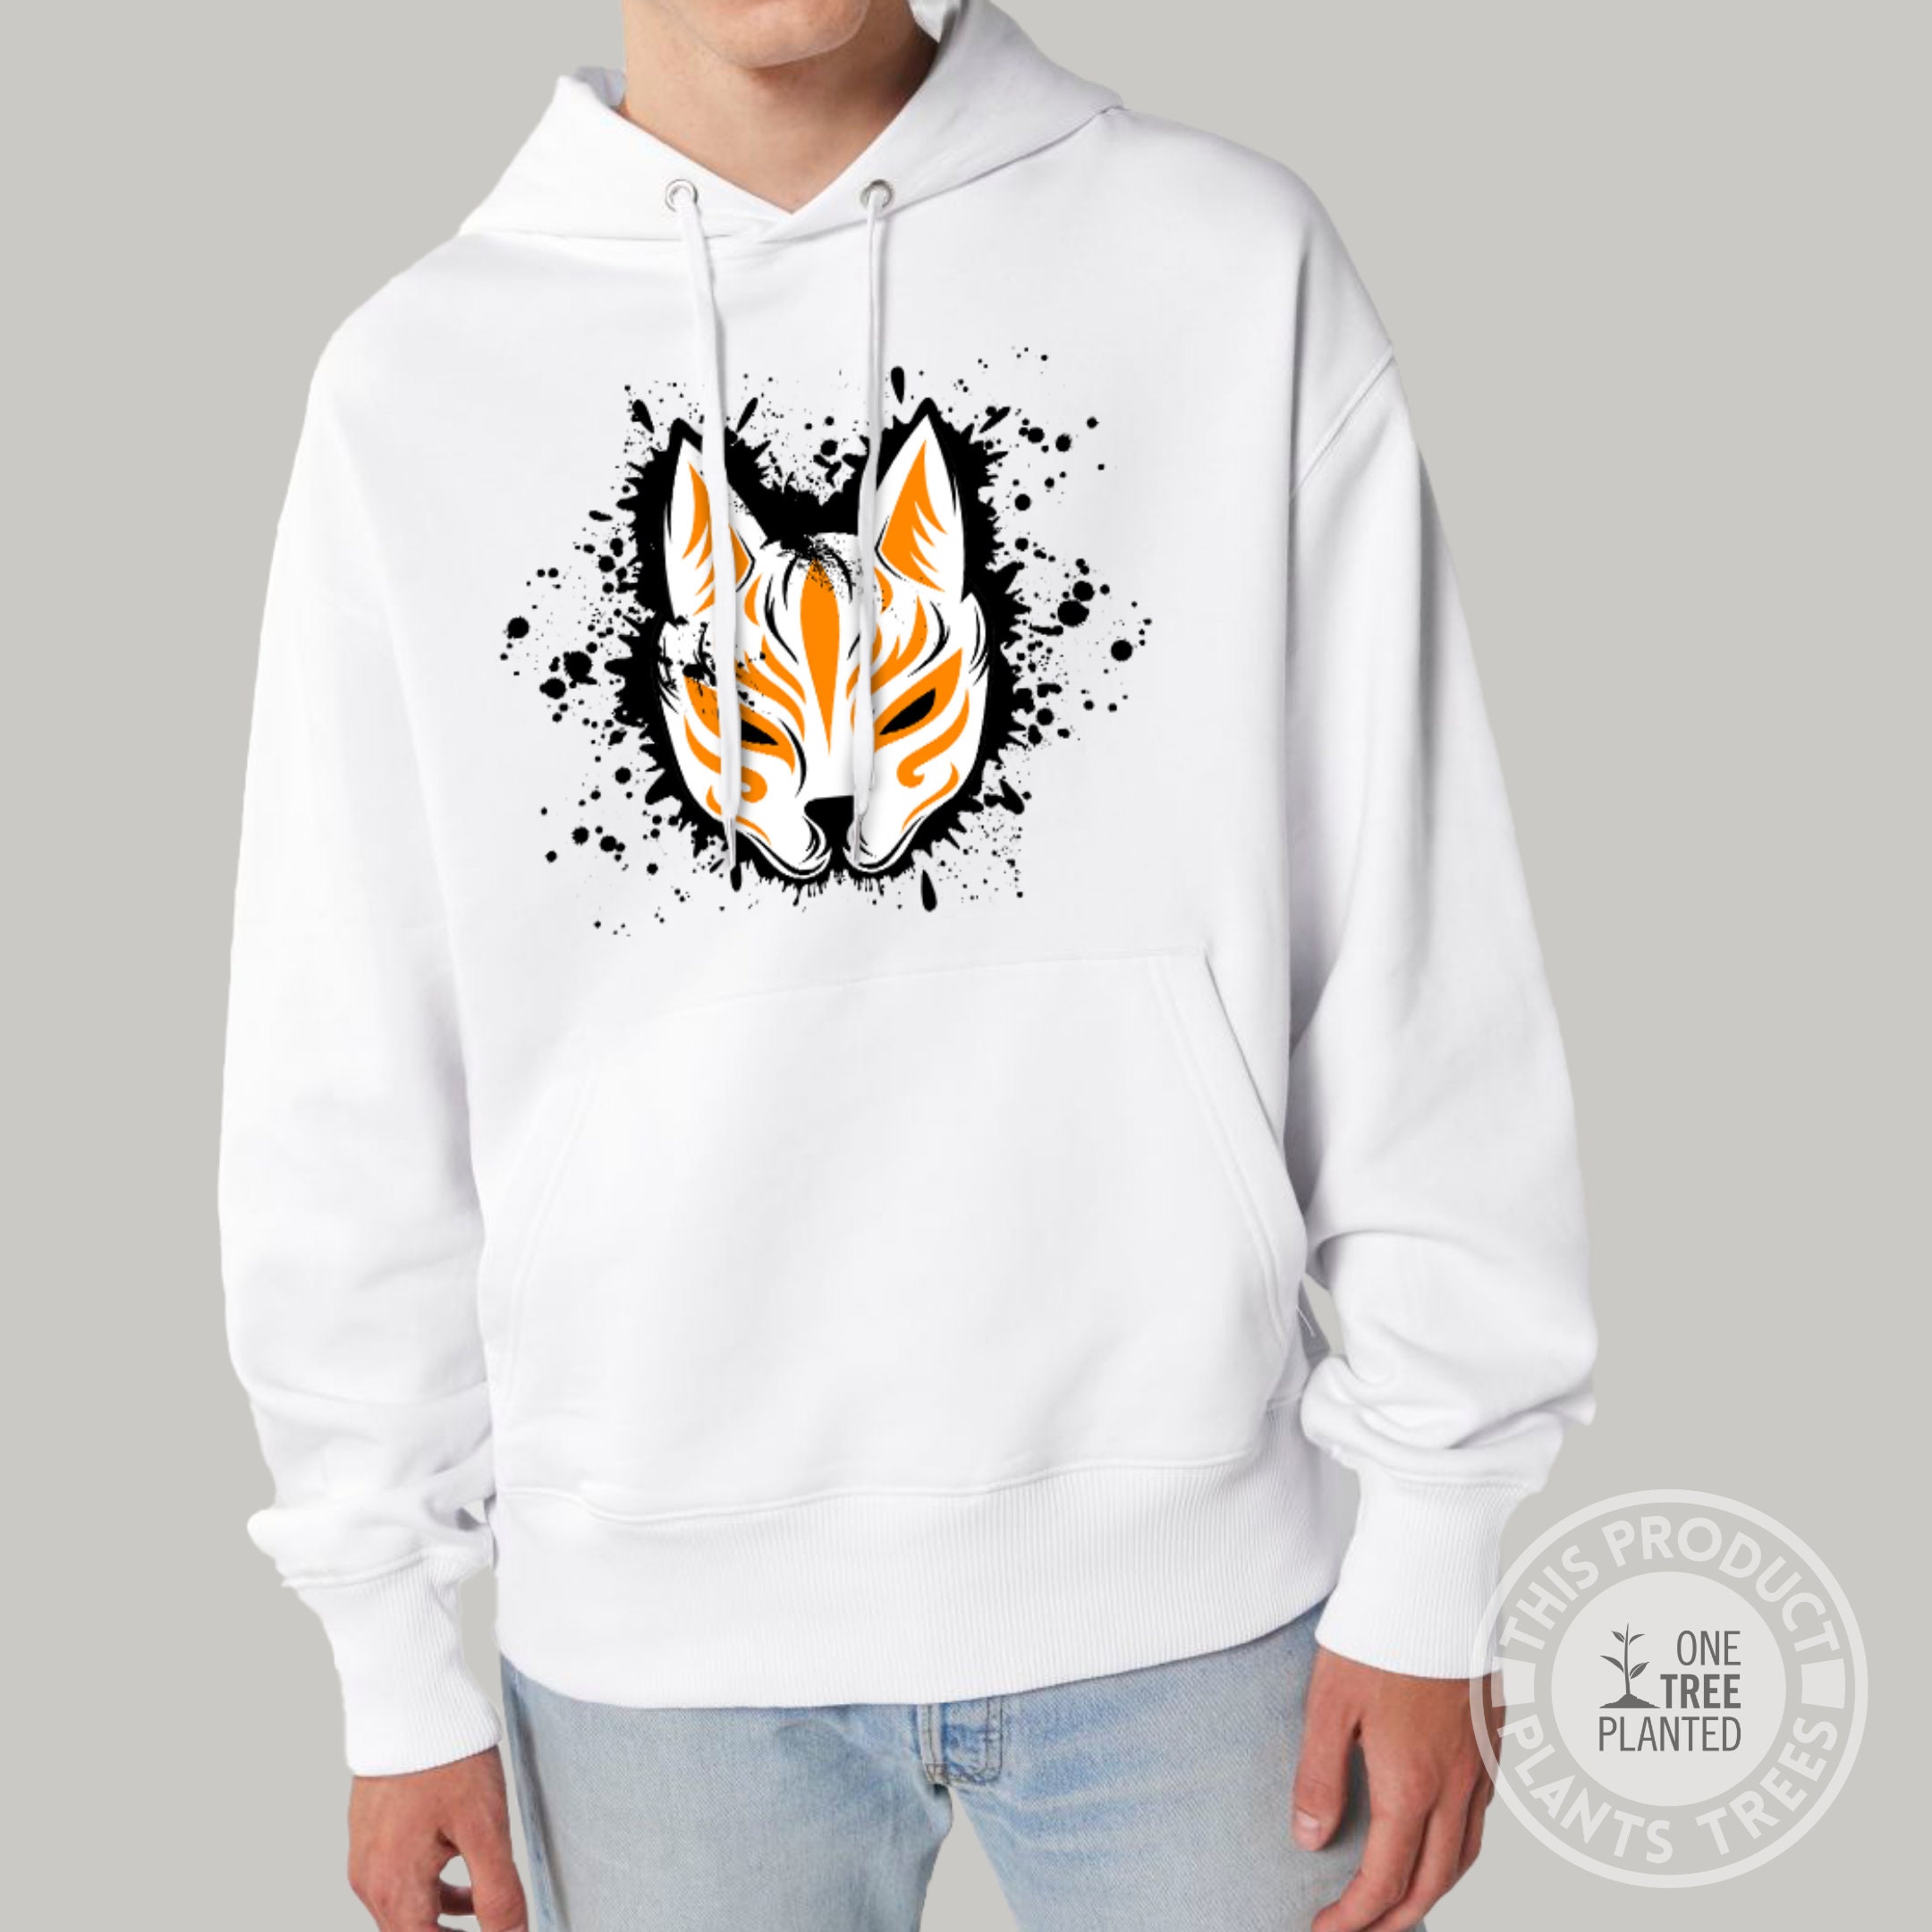 Kleding Herenkleding Hoodies & Sweatshirts Hoodies Yokosuka Japanse Kitsune Pullover Nine Tailed Fox geborduurde hoodie Hefushi Borduurwerk Katoen Pullover 